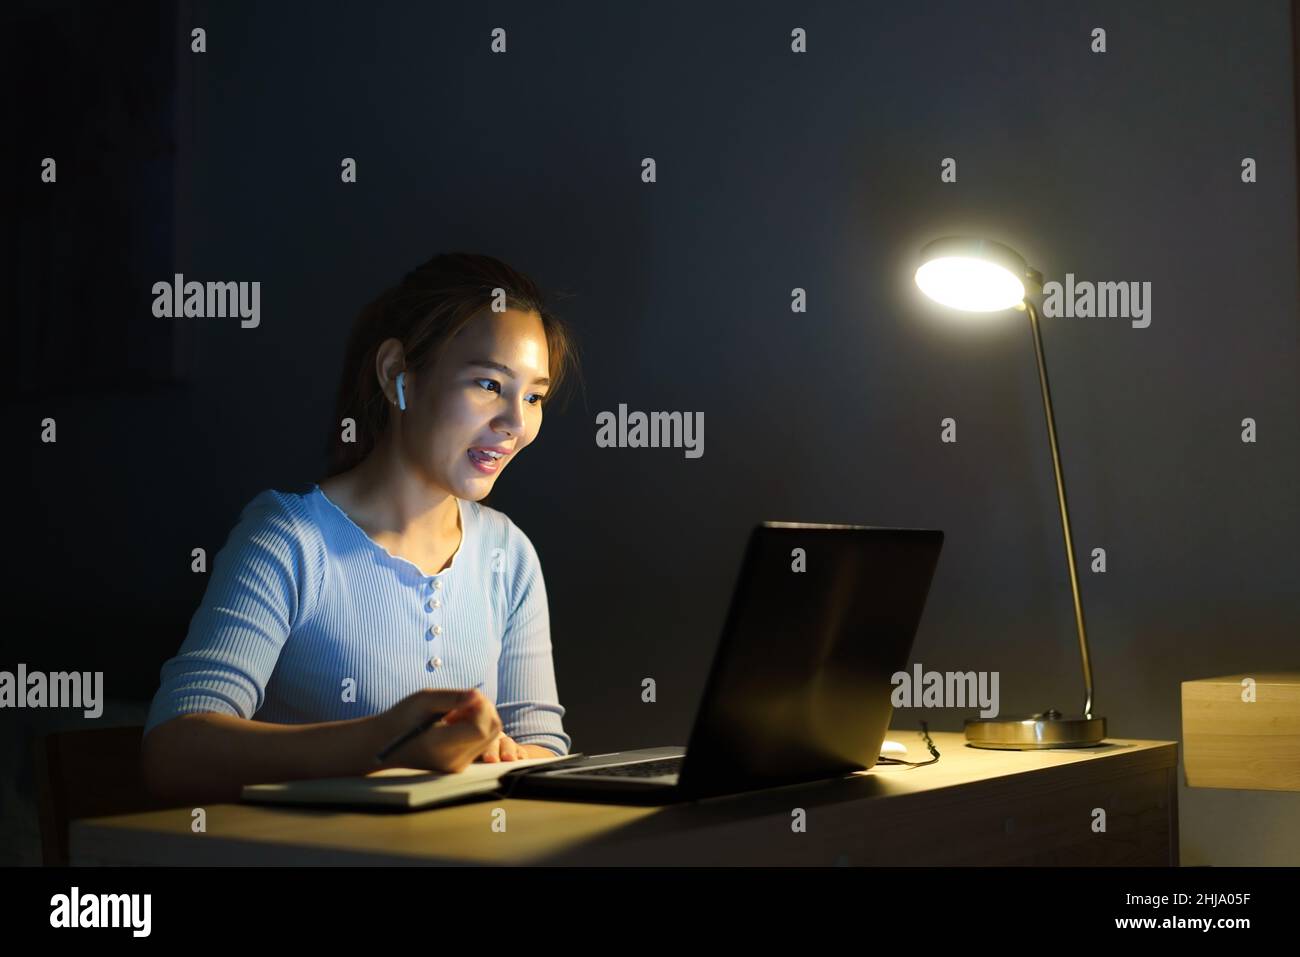 Le donne asiatiche lavorano a casa sono sedute al lavoro con colleghi o manager tramite videochiamata di notte a casa. Foto Stock